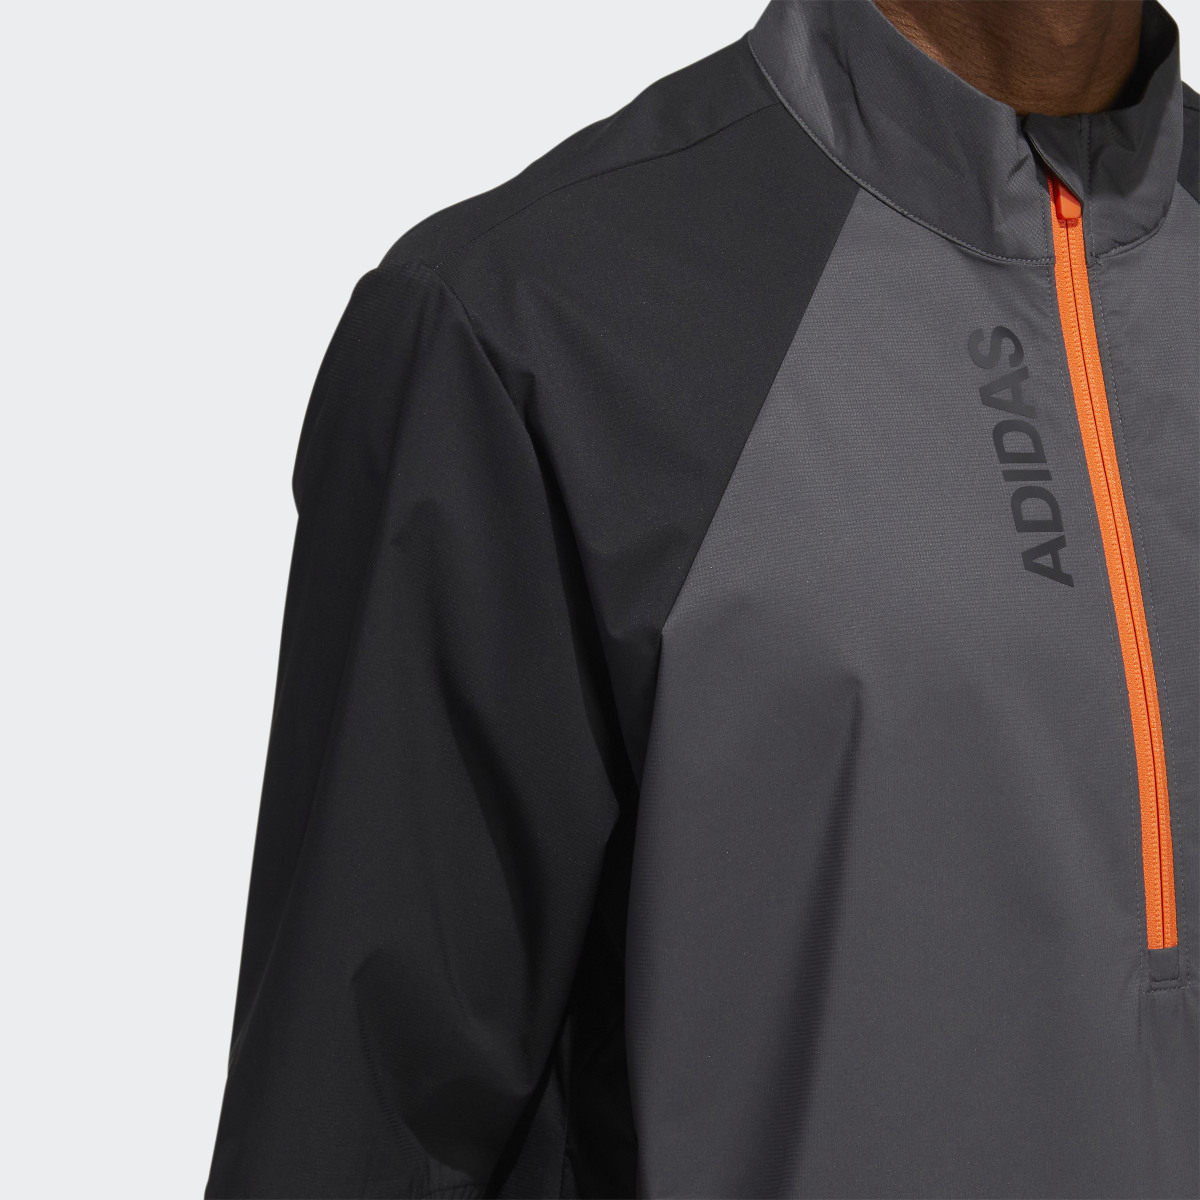 Adidas Provisional Short Sleeve Jacket. 6